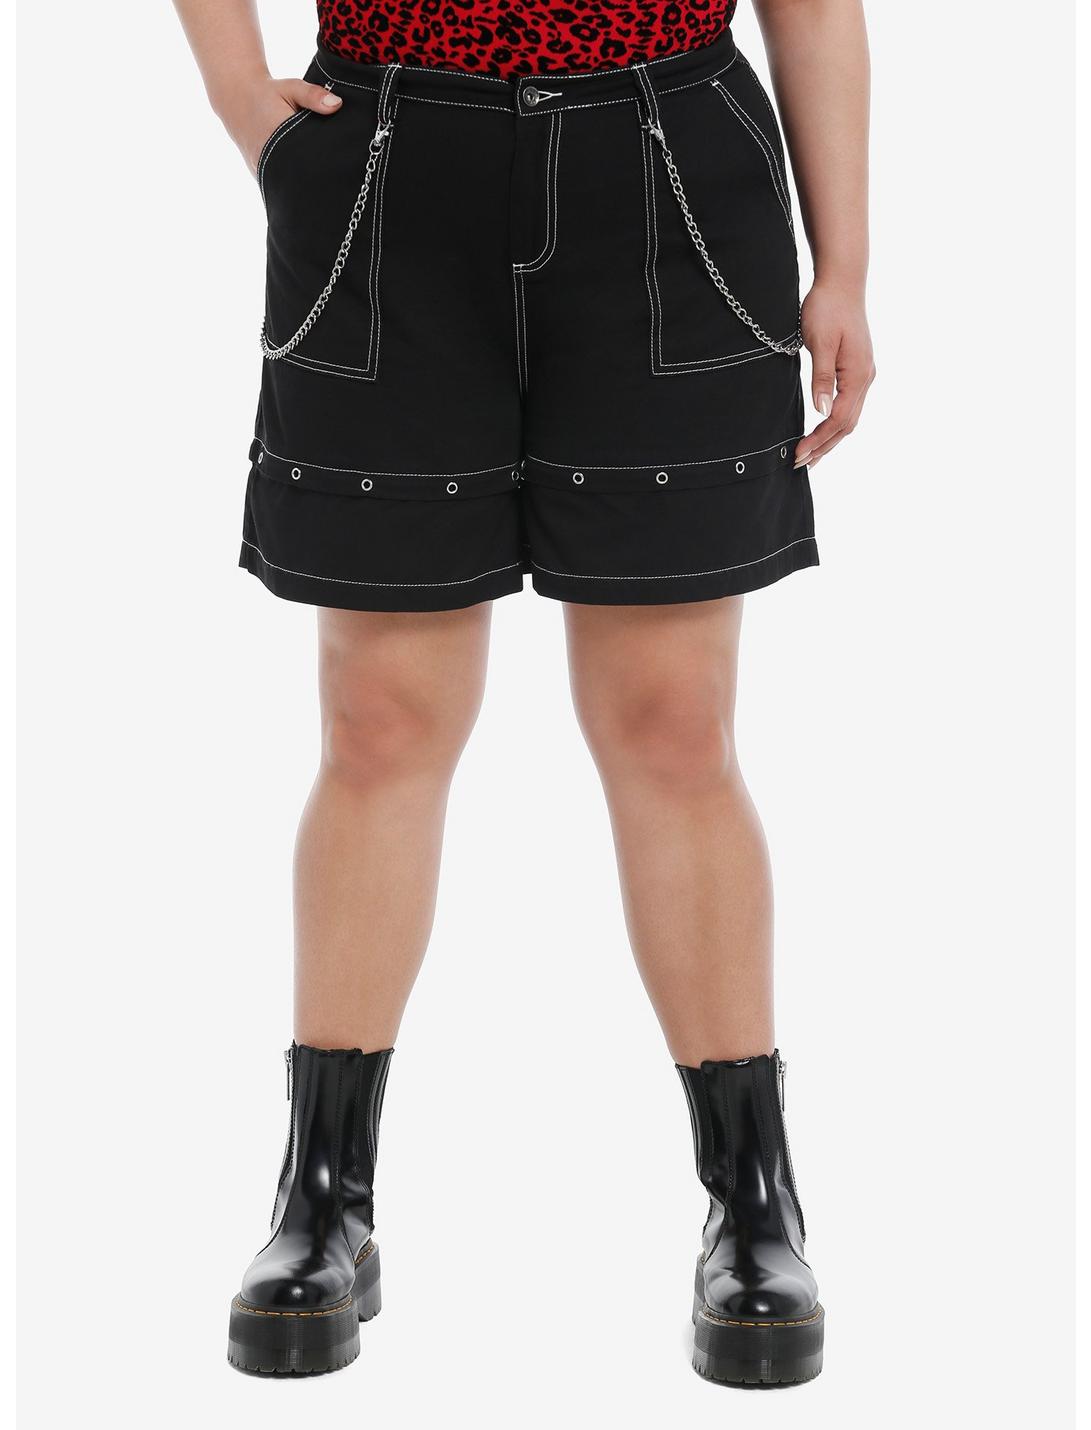 Black Double Chain Girls Carpenter Shorts Plus Size, BLACK, hi-res